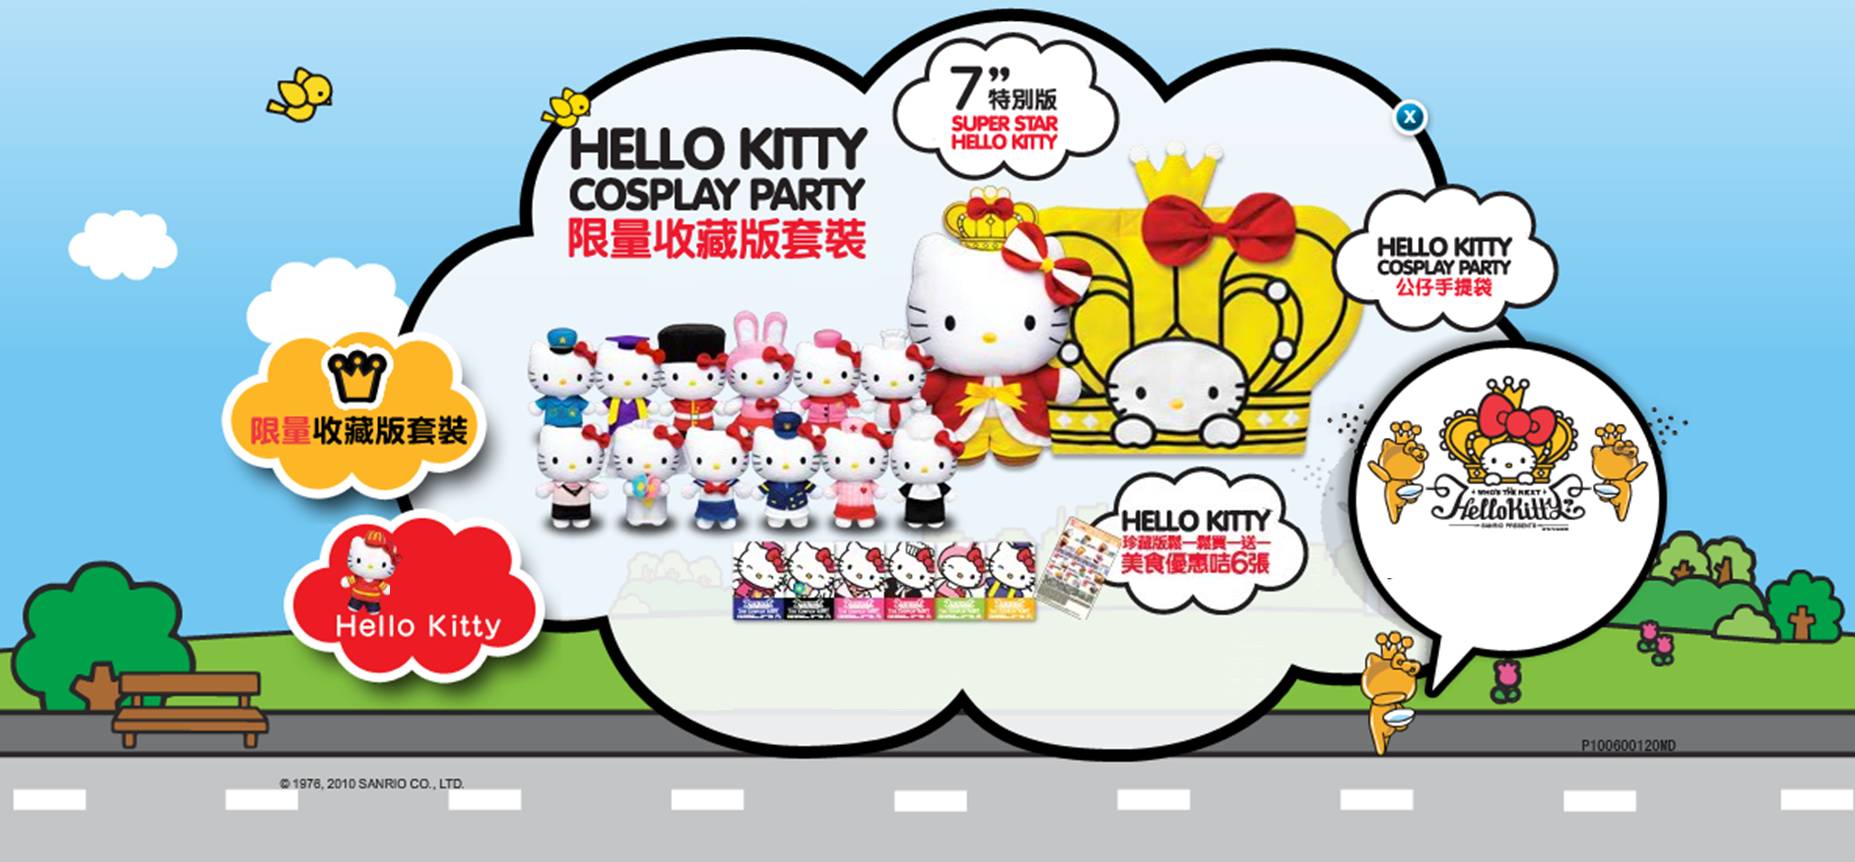 麥當勞Hello Kitty Cosplay Party套裝 